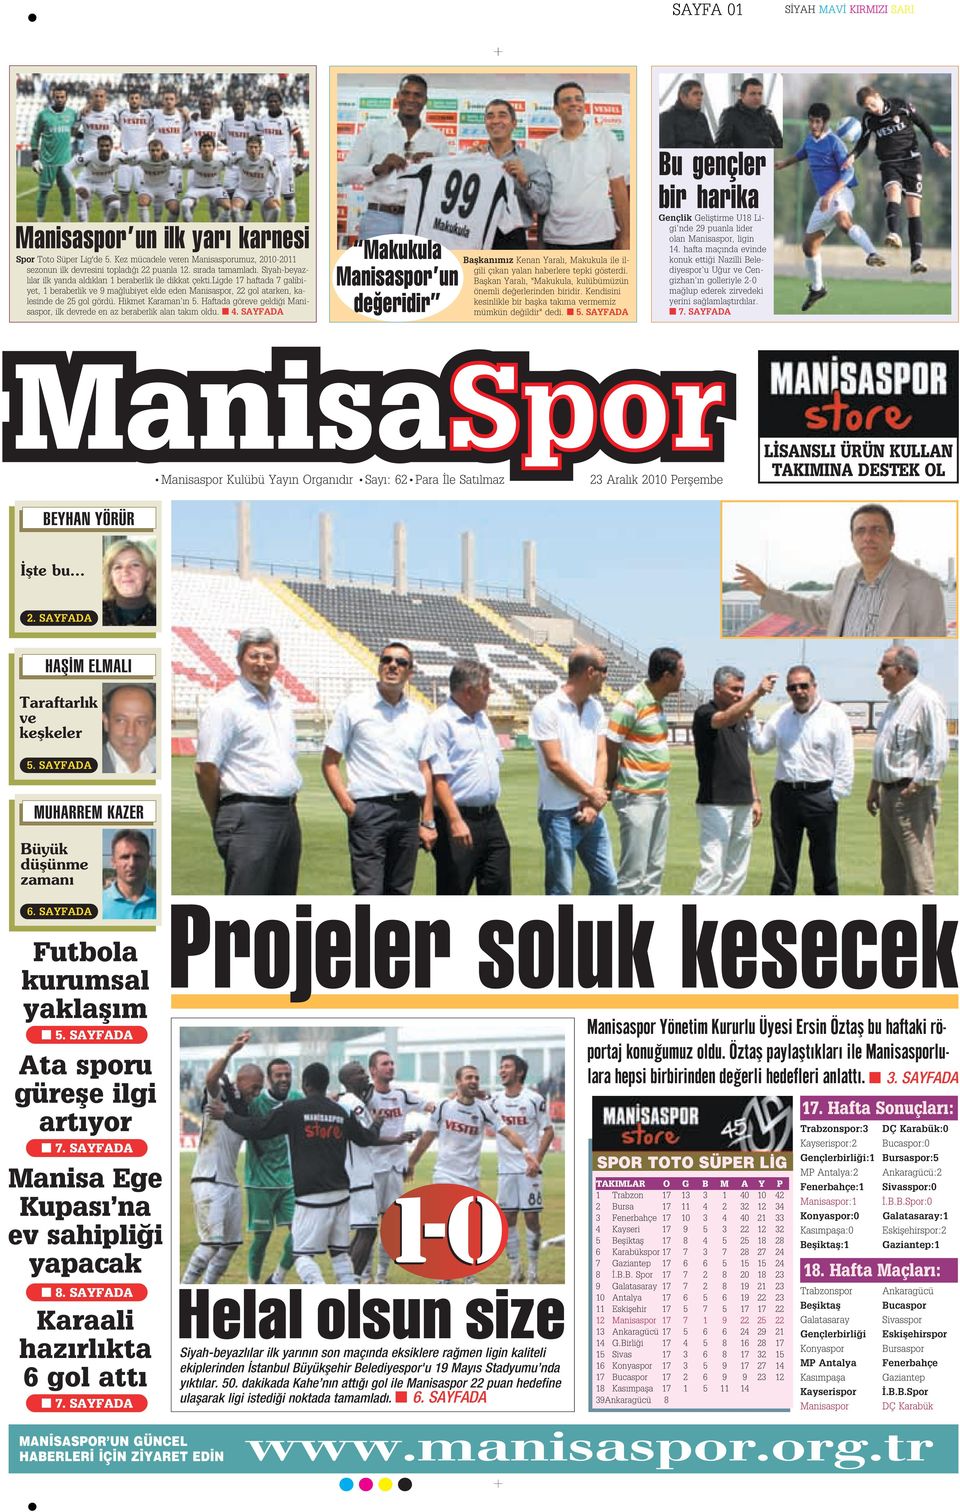 Hikmet Karaman n 5. Haftada göreve geldi i Manisaspor, ilk devrede en az beraberlik alan tak m oldu. 4.